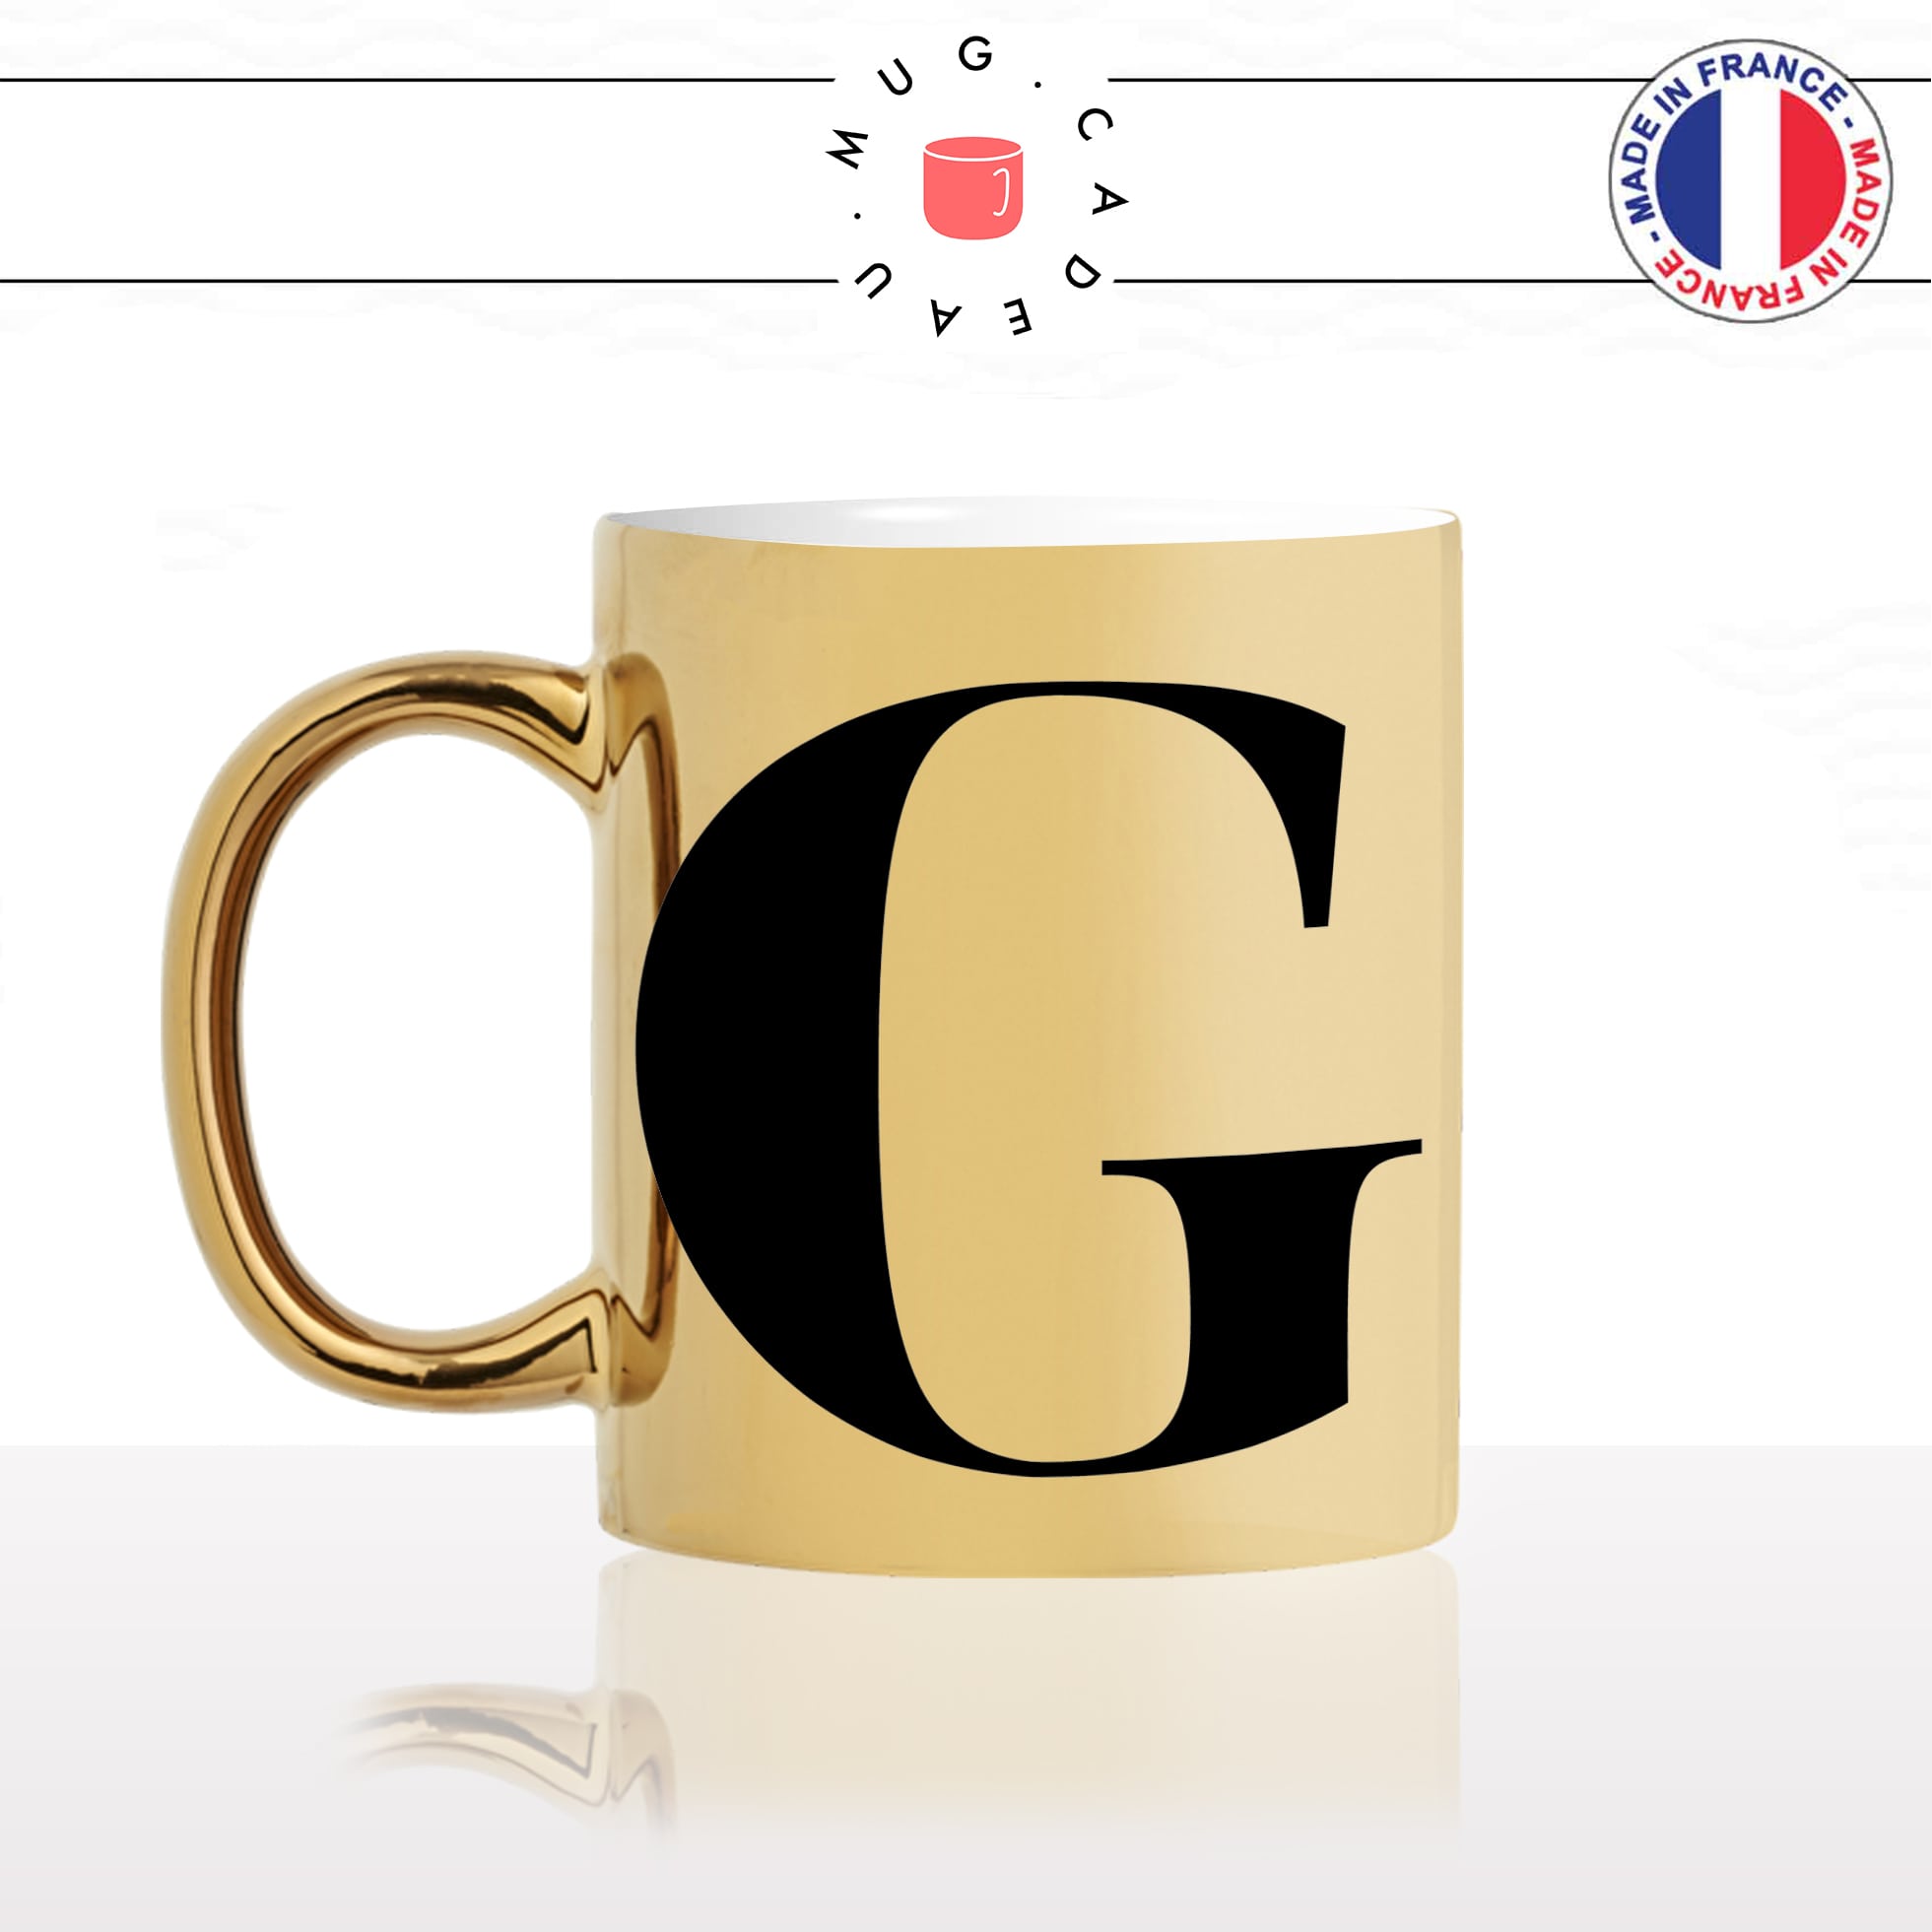 mug-tasse-or-doré-gold-lettre-initiale-calligraphie-fonte-ecriture-lettrine-g-prénom-idée-cadeau-fun-originale-personnalisée-café-thé-chocolat-min